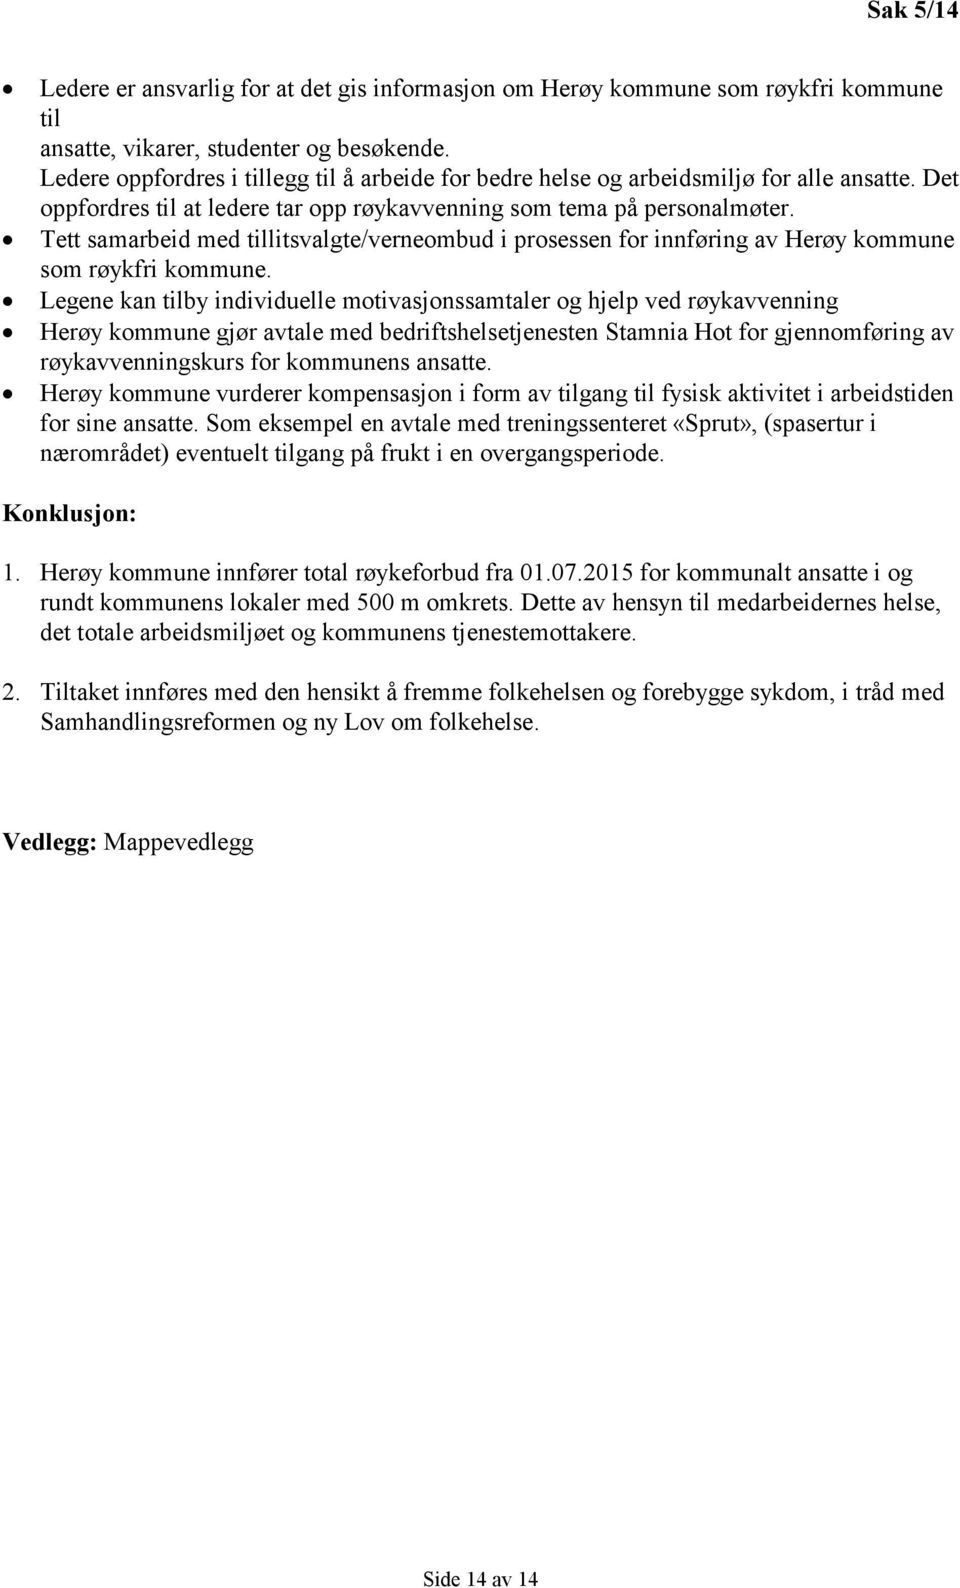 Tett samarbeid med tillitsvalgte/verneombud i prosessen for innføring av Herøy kommune som røykfri kommune.